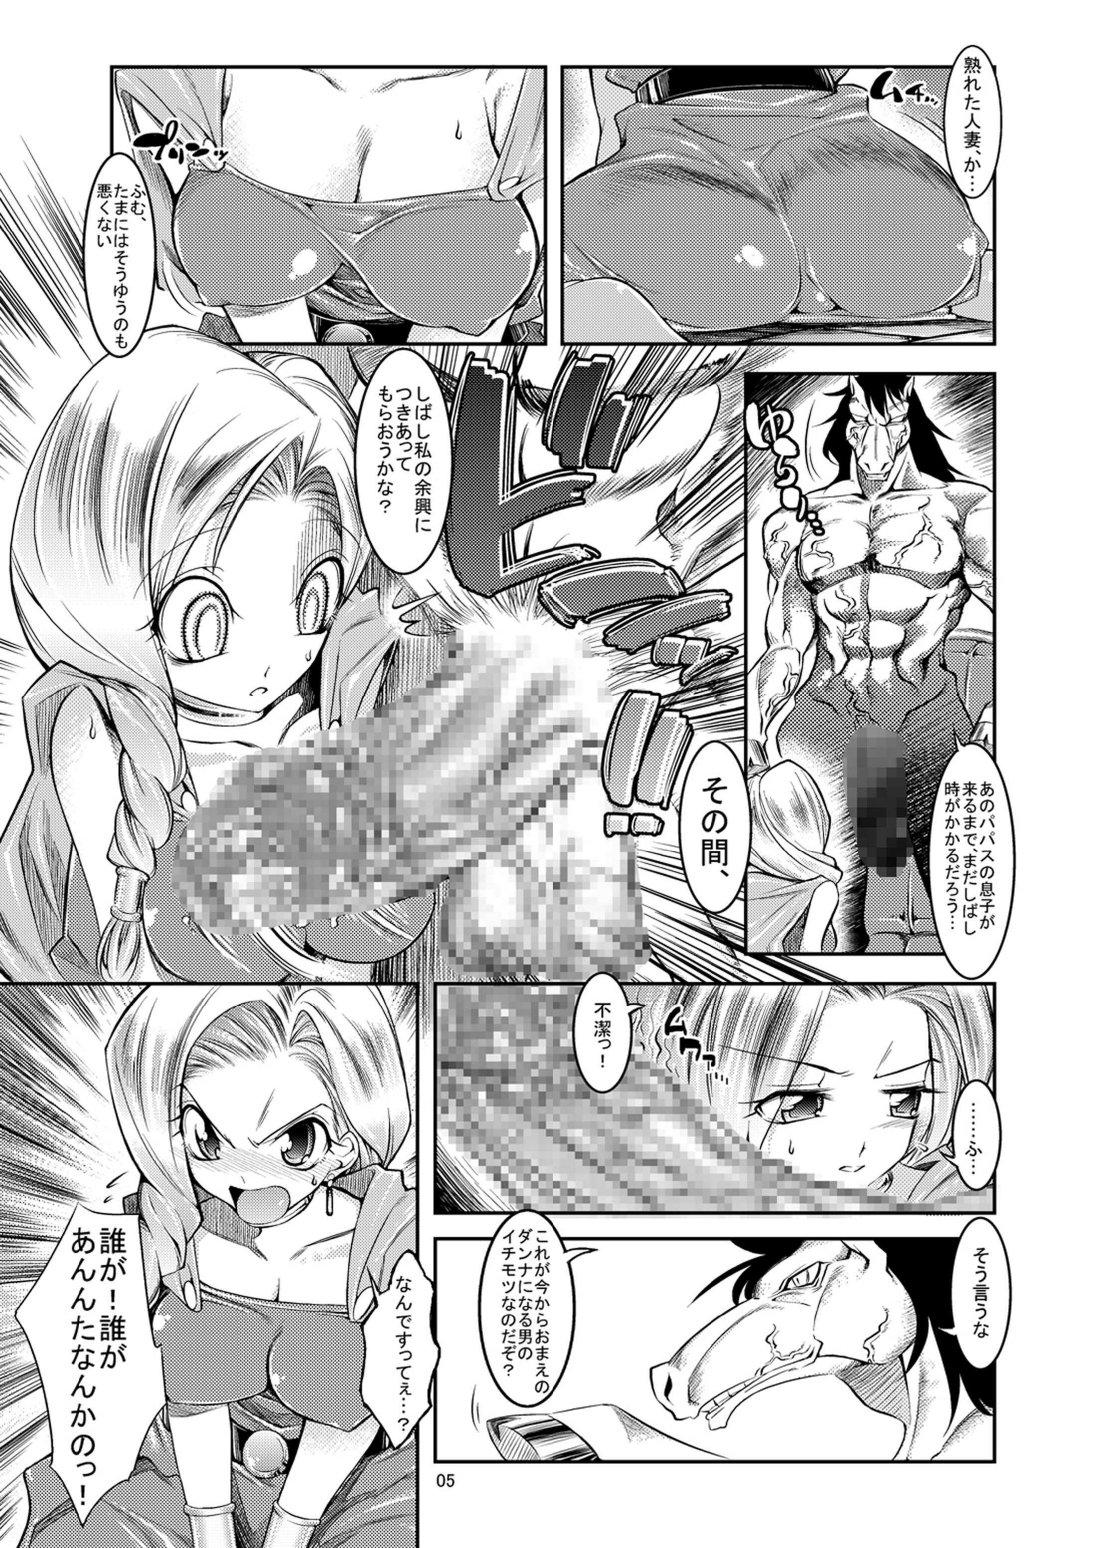 Wam Medapani Quest Bianca-hen - Dragon quest v Vecina - Page 5